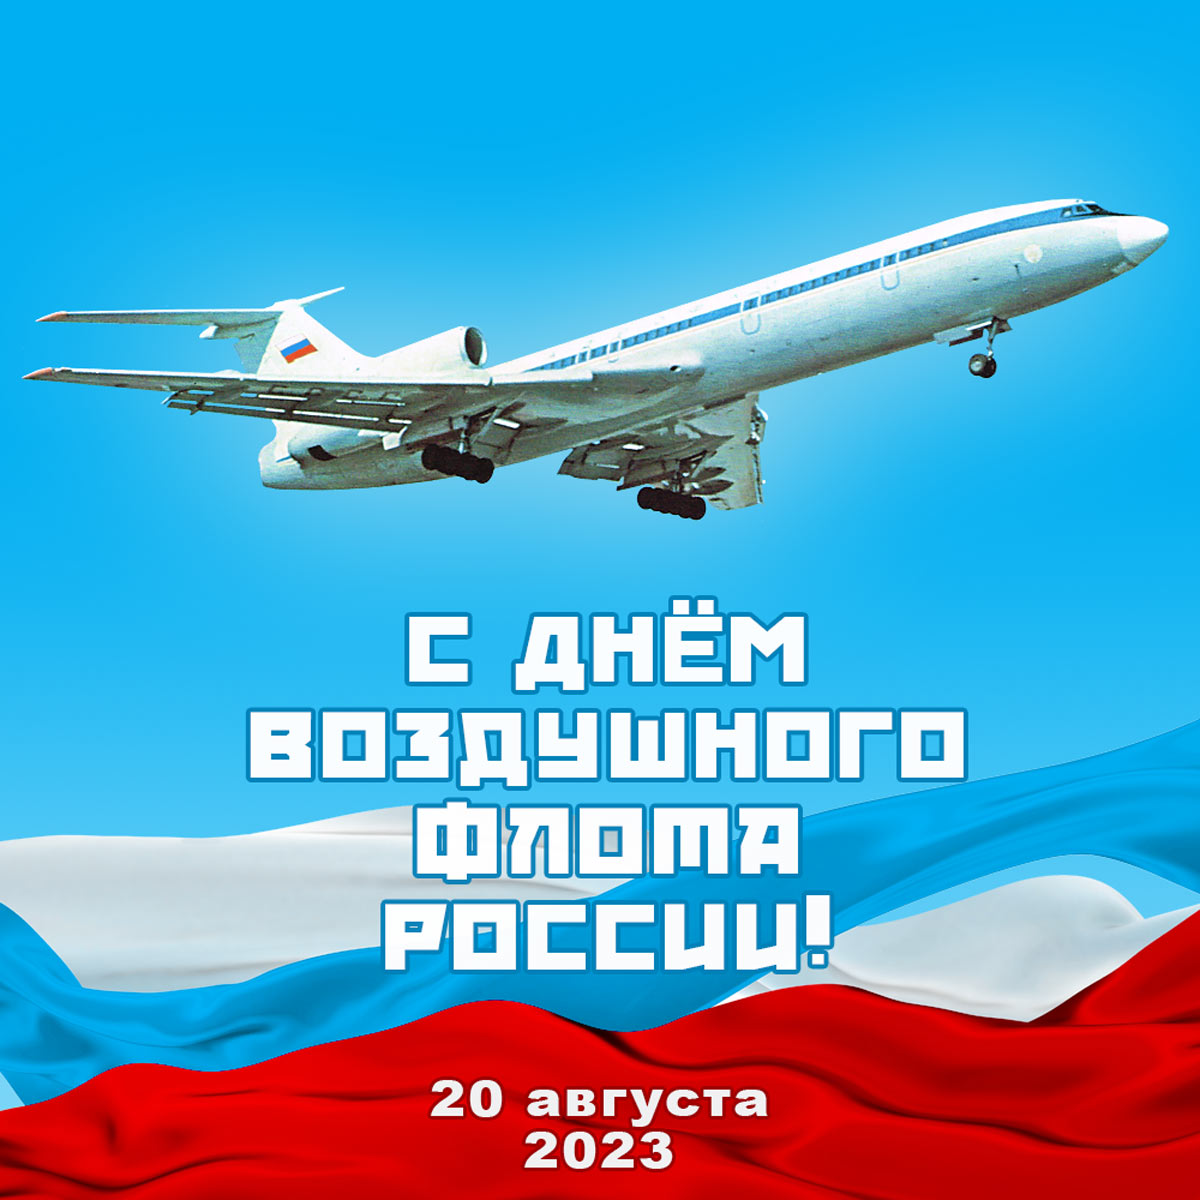 Красивая открытка на День воздушного флота России